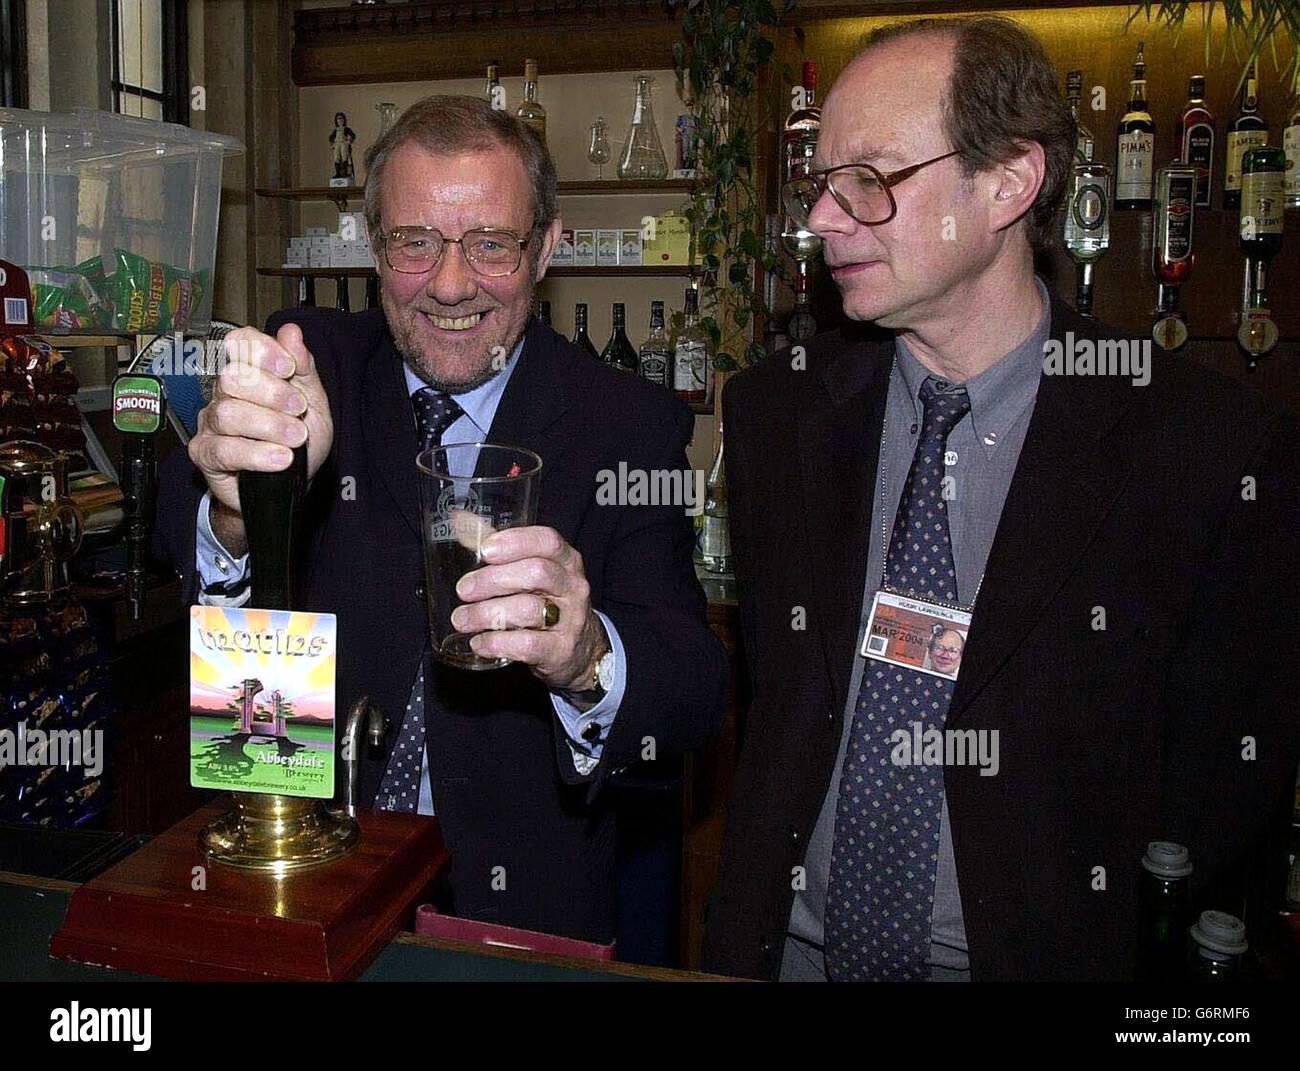 Richard Caborn MP (Sheffield) avec le journaliste Huw Lawrence de Sheffield Star dans le bar des étrangers de la Chambre des communes, photographié devant une pompe de brasserie de Sheffield.M. Cabourn a un verre vide comme la bière a épuisé, tel est sa popularité. Banque D'Images